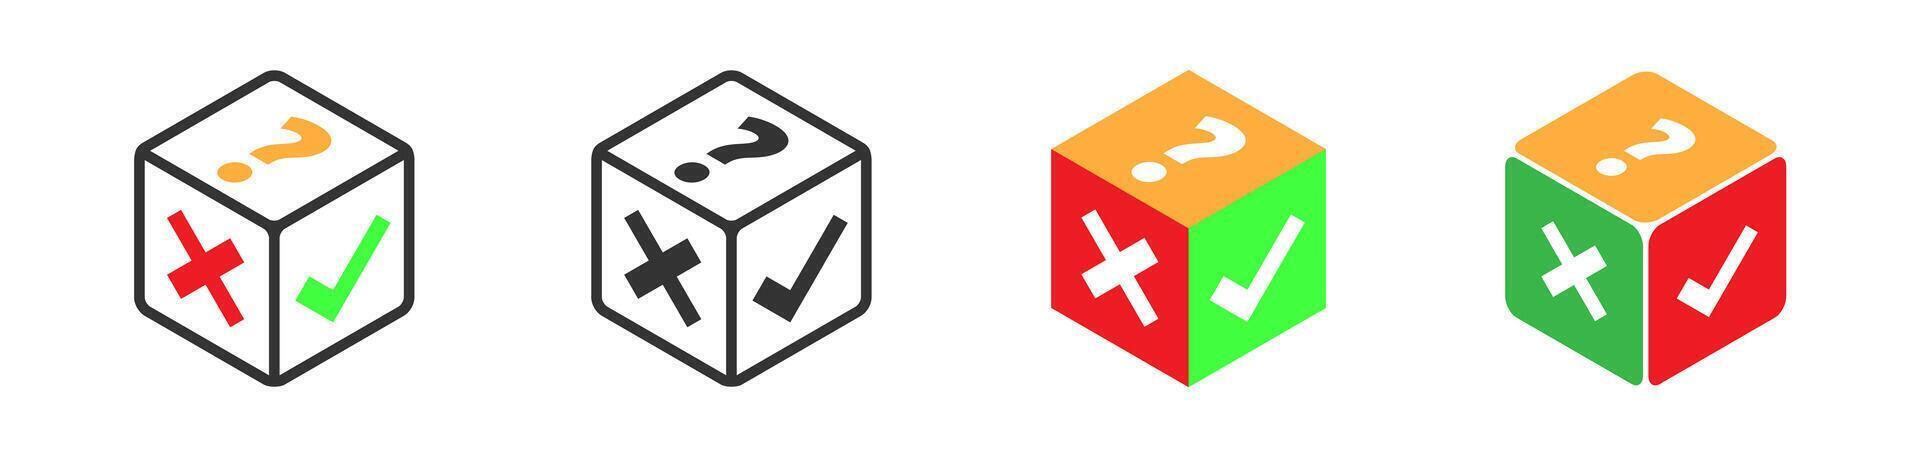 cube avec vérifier marquer, croix, et question marque icône. coloré isométrique conception. vecteur illustration.